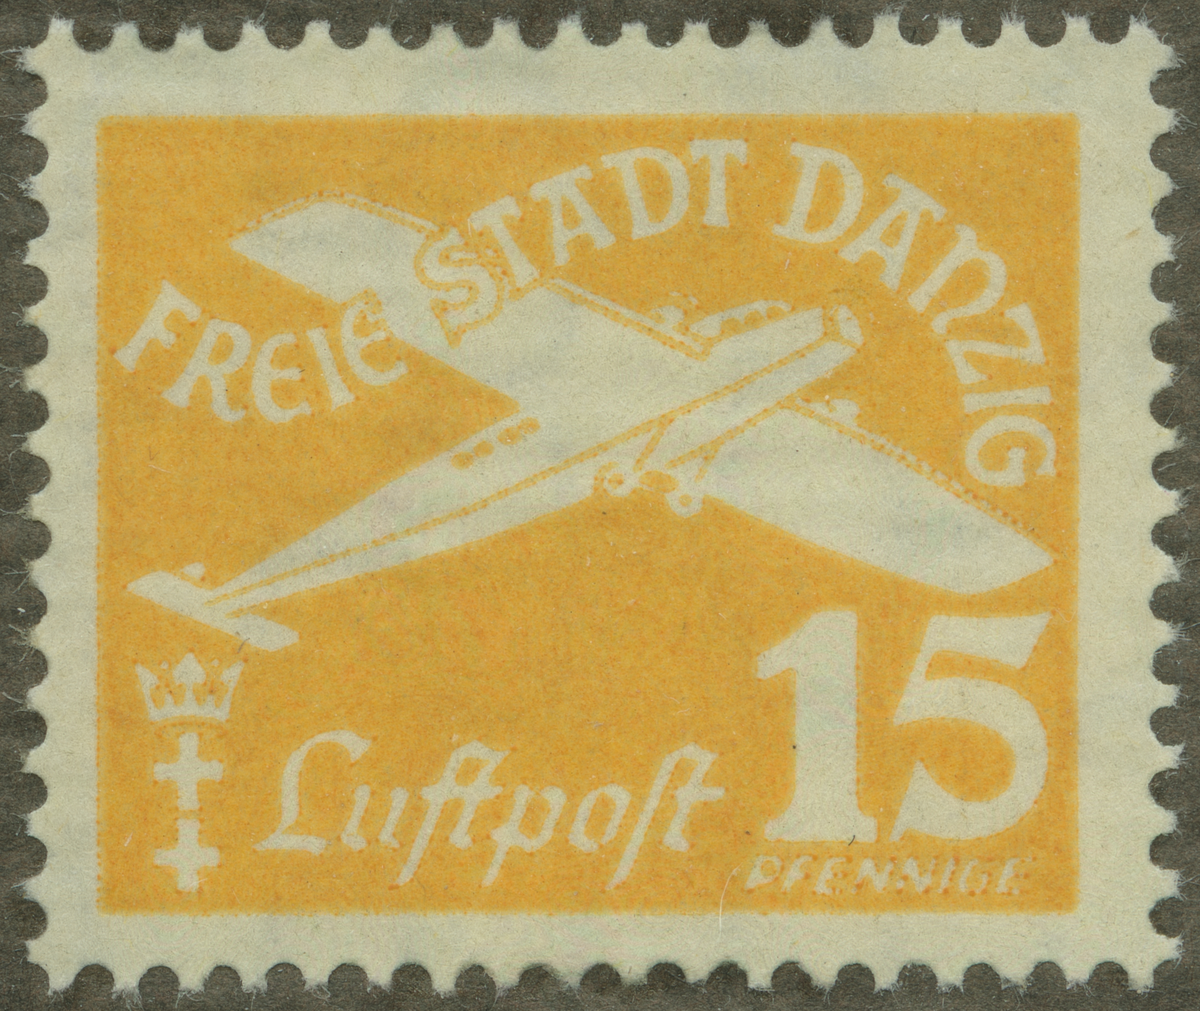 Frimärke ur Gösta Bodmans filatelistiska motivsamling, påbörjad 1950.
Frimärke från Danzig, 1935. Motiv av Postmonoplan